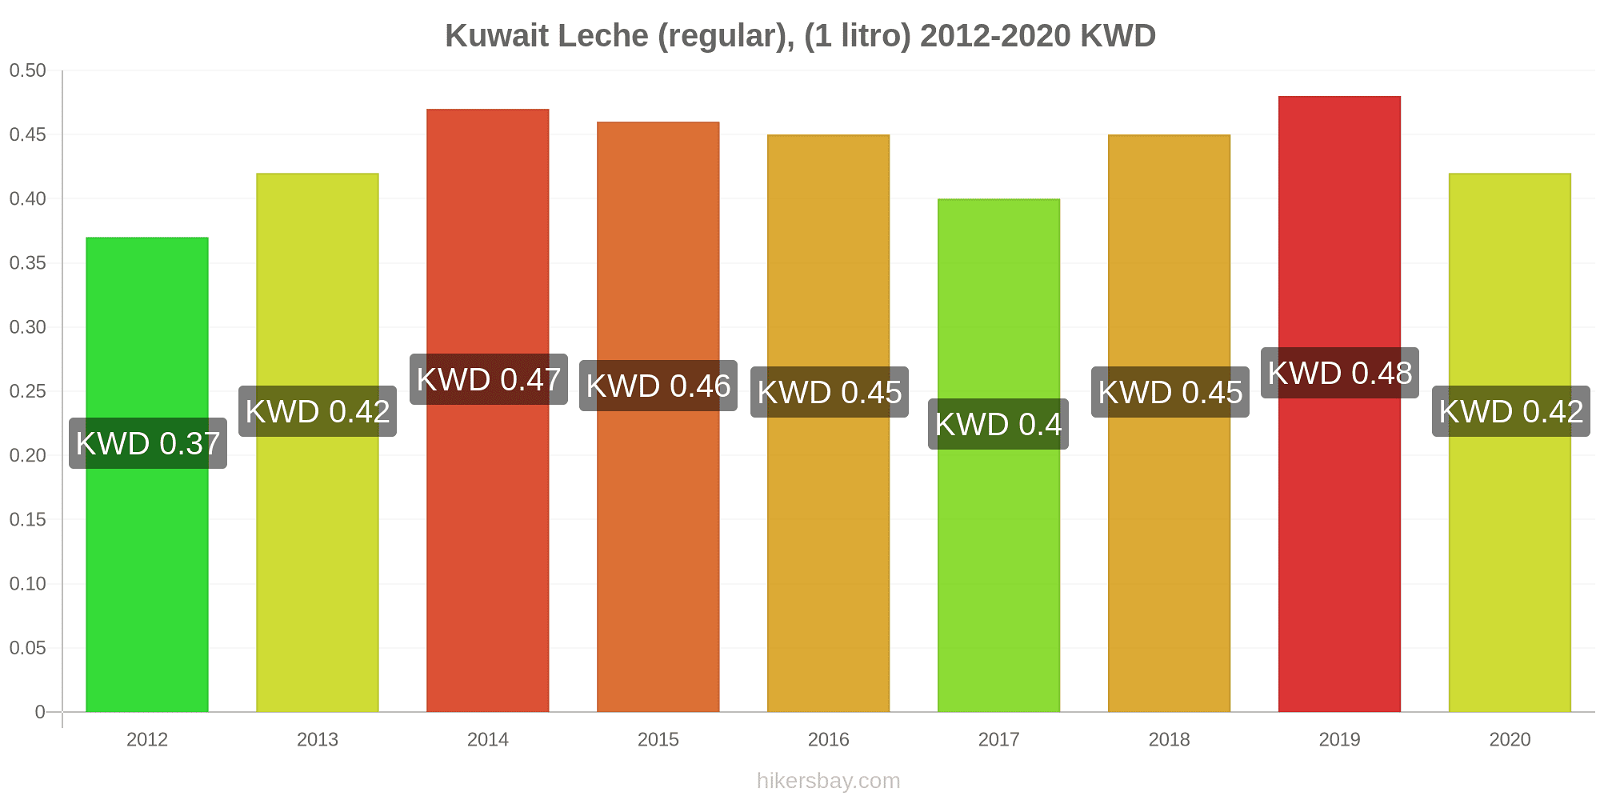 Kuwait cambios de precios Leche (Regular), (1 litro) hikersbay.com